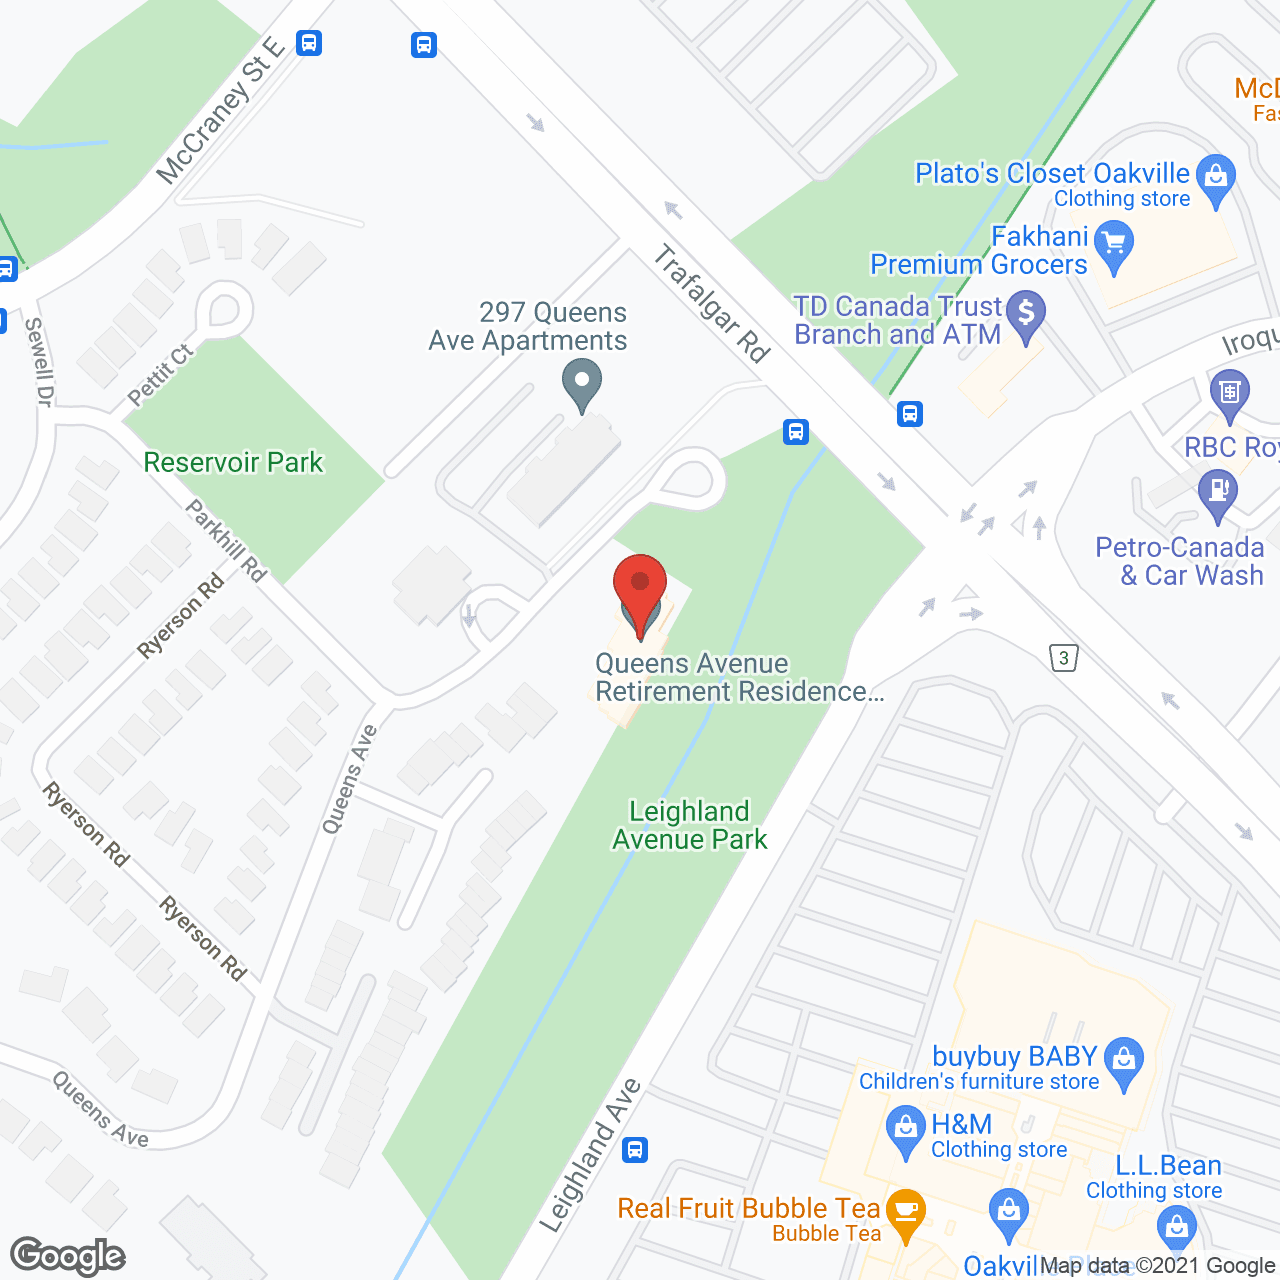 Queens Avenue Retirement in google map